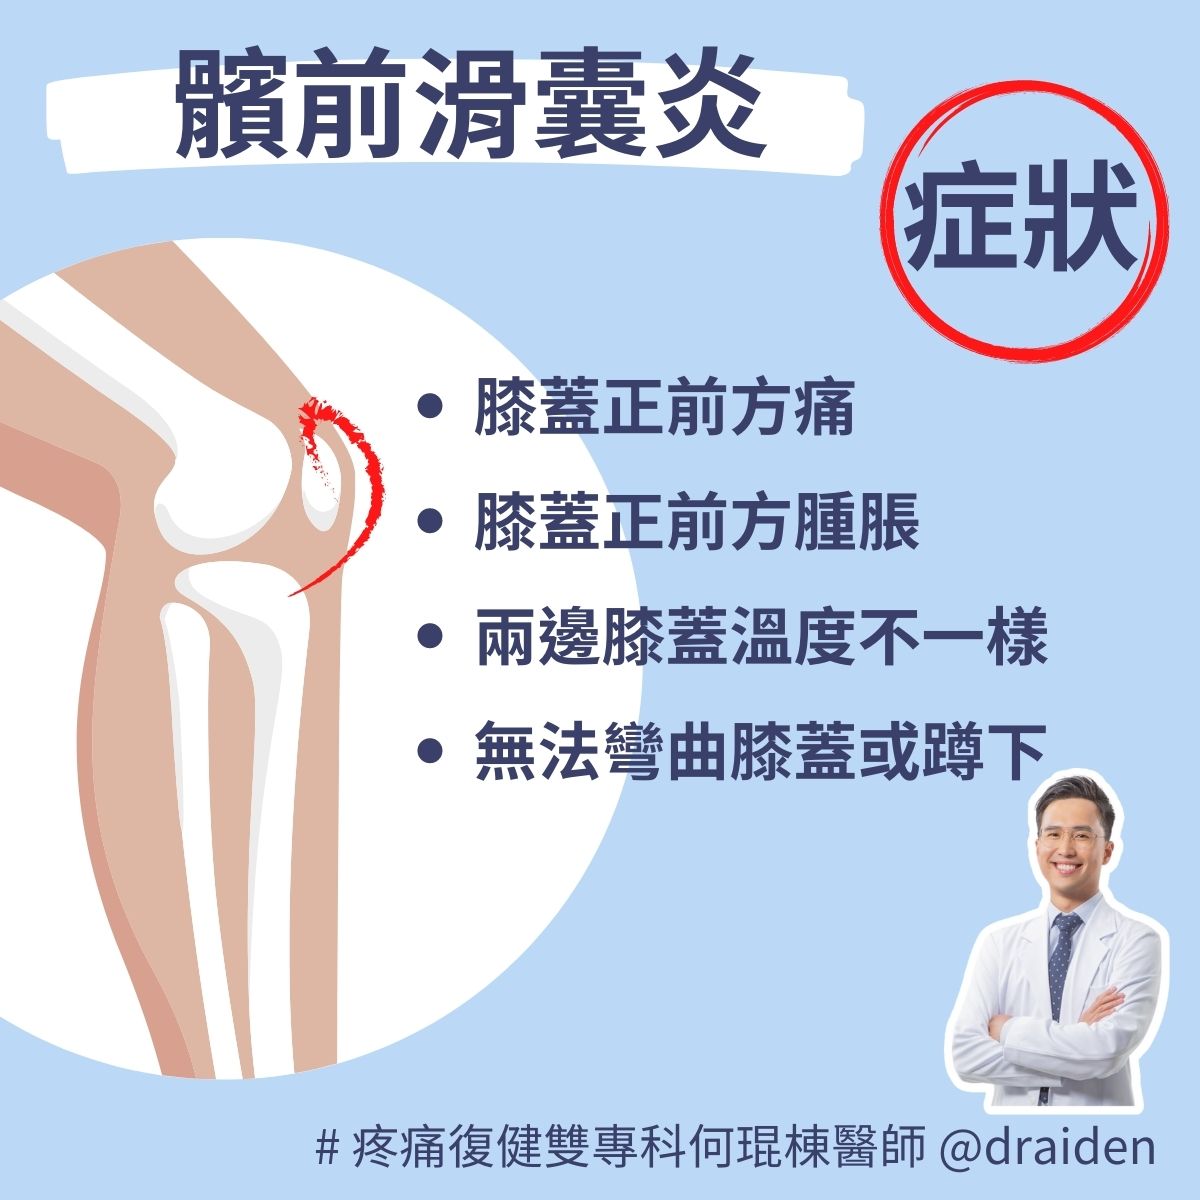 髕前滑囊炎症狀：膝蓋正前方痛、膝蓋正前方腫脹、兩邊膝蓋溫度不一樣，不舒服的膝蓋比較燙、無法將膝蓋彎曲到底或正常蹲下